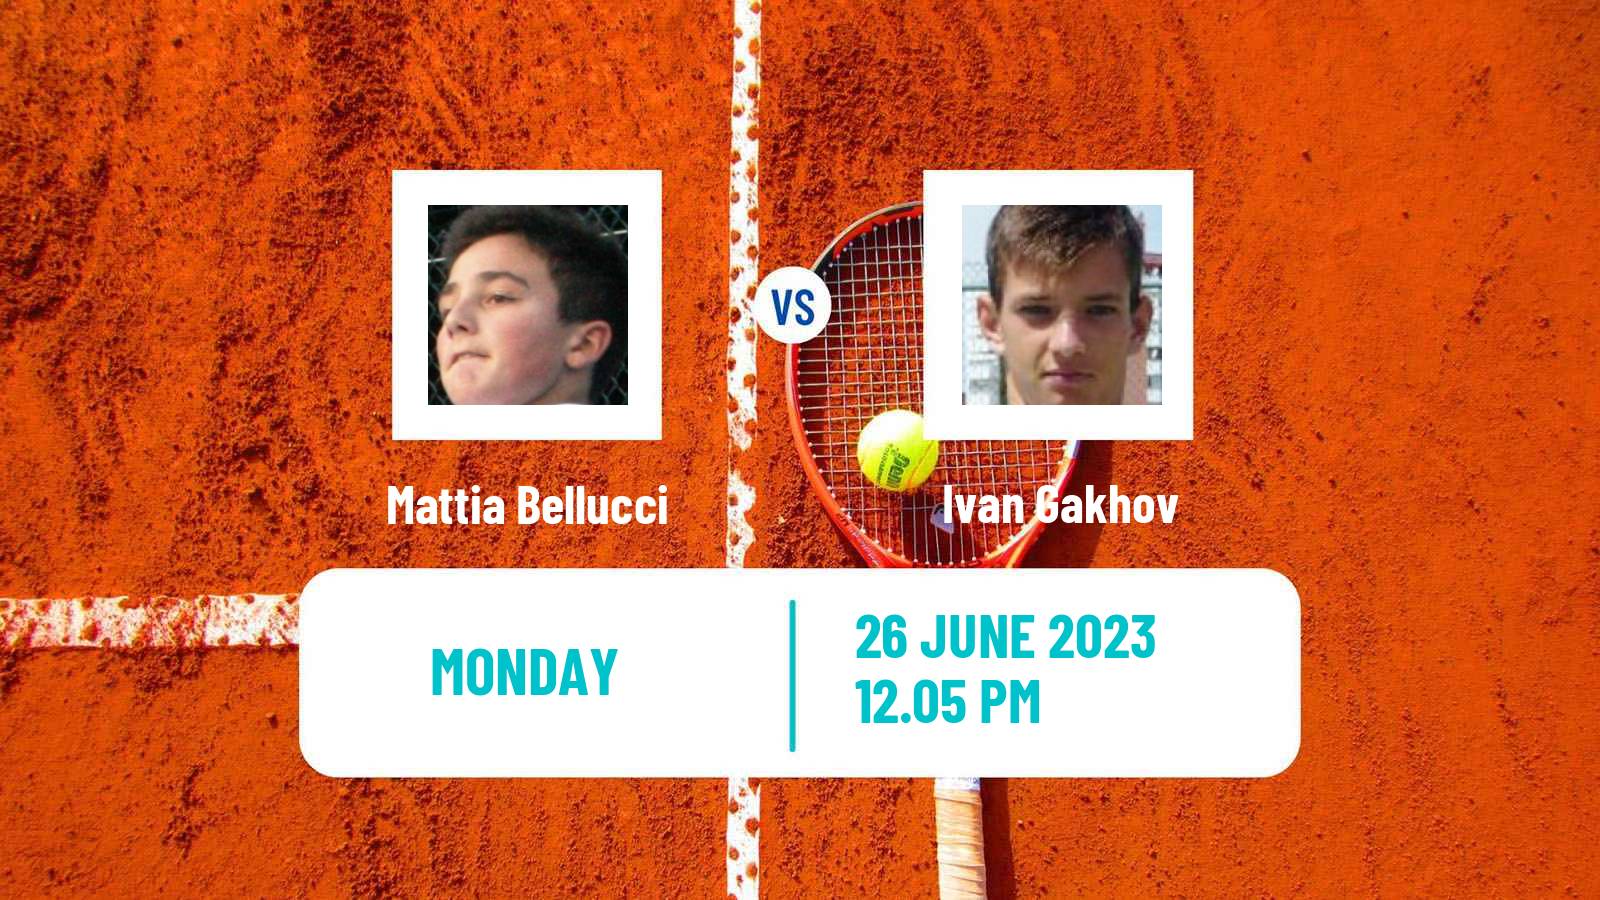 Tennis ATP Wimbledon Mattia Bellucci - Ivan Gakhov